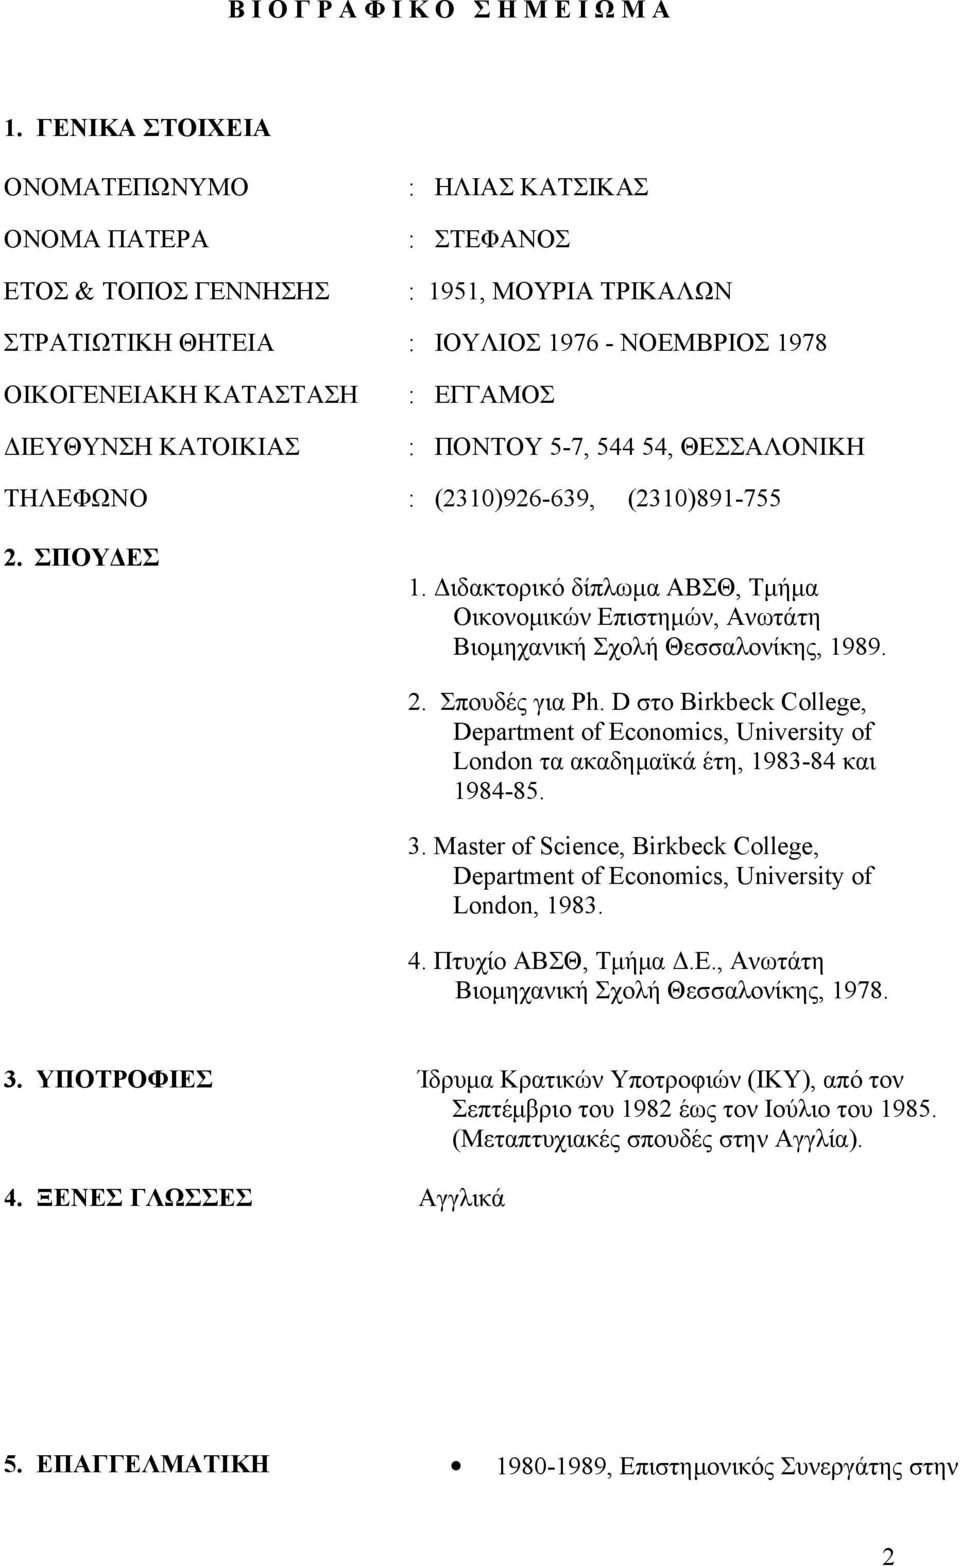 Διδακτορικό δίπλωμα ABΣΘ, Τμήμα Οικονομικών Επιστημών, Ανωτάτη Βιομηχανική Σχολή Θεσσαλονίκης, 1989. 2. Σπουδές για Ph.